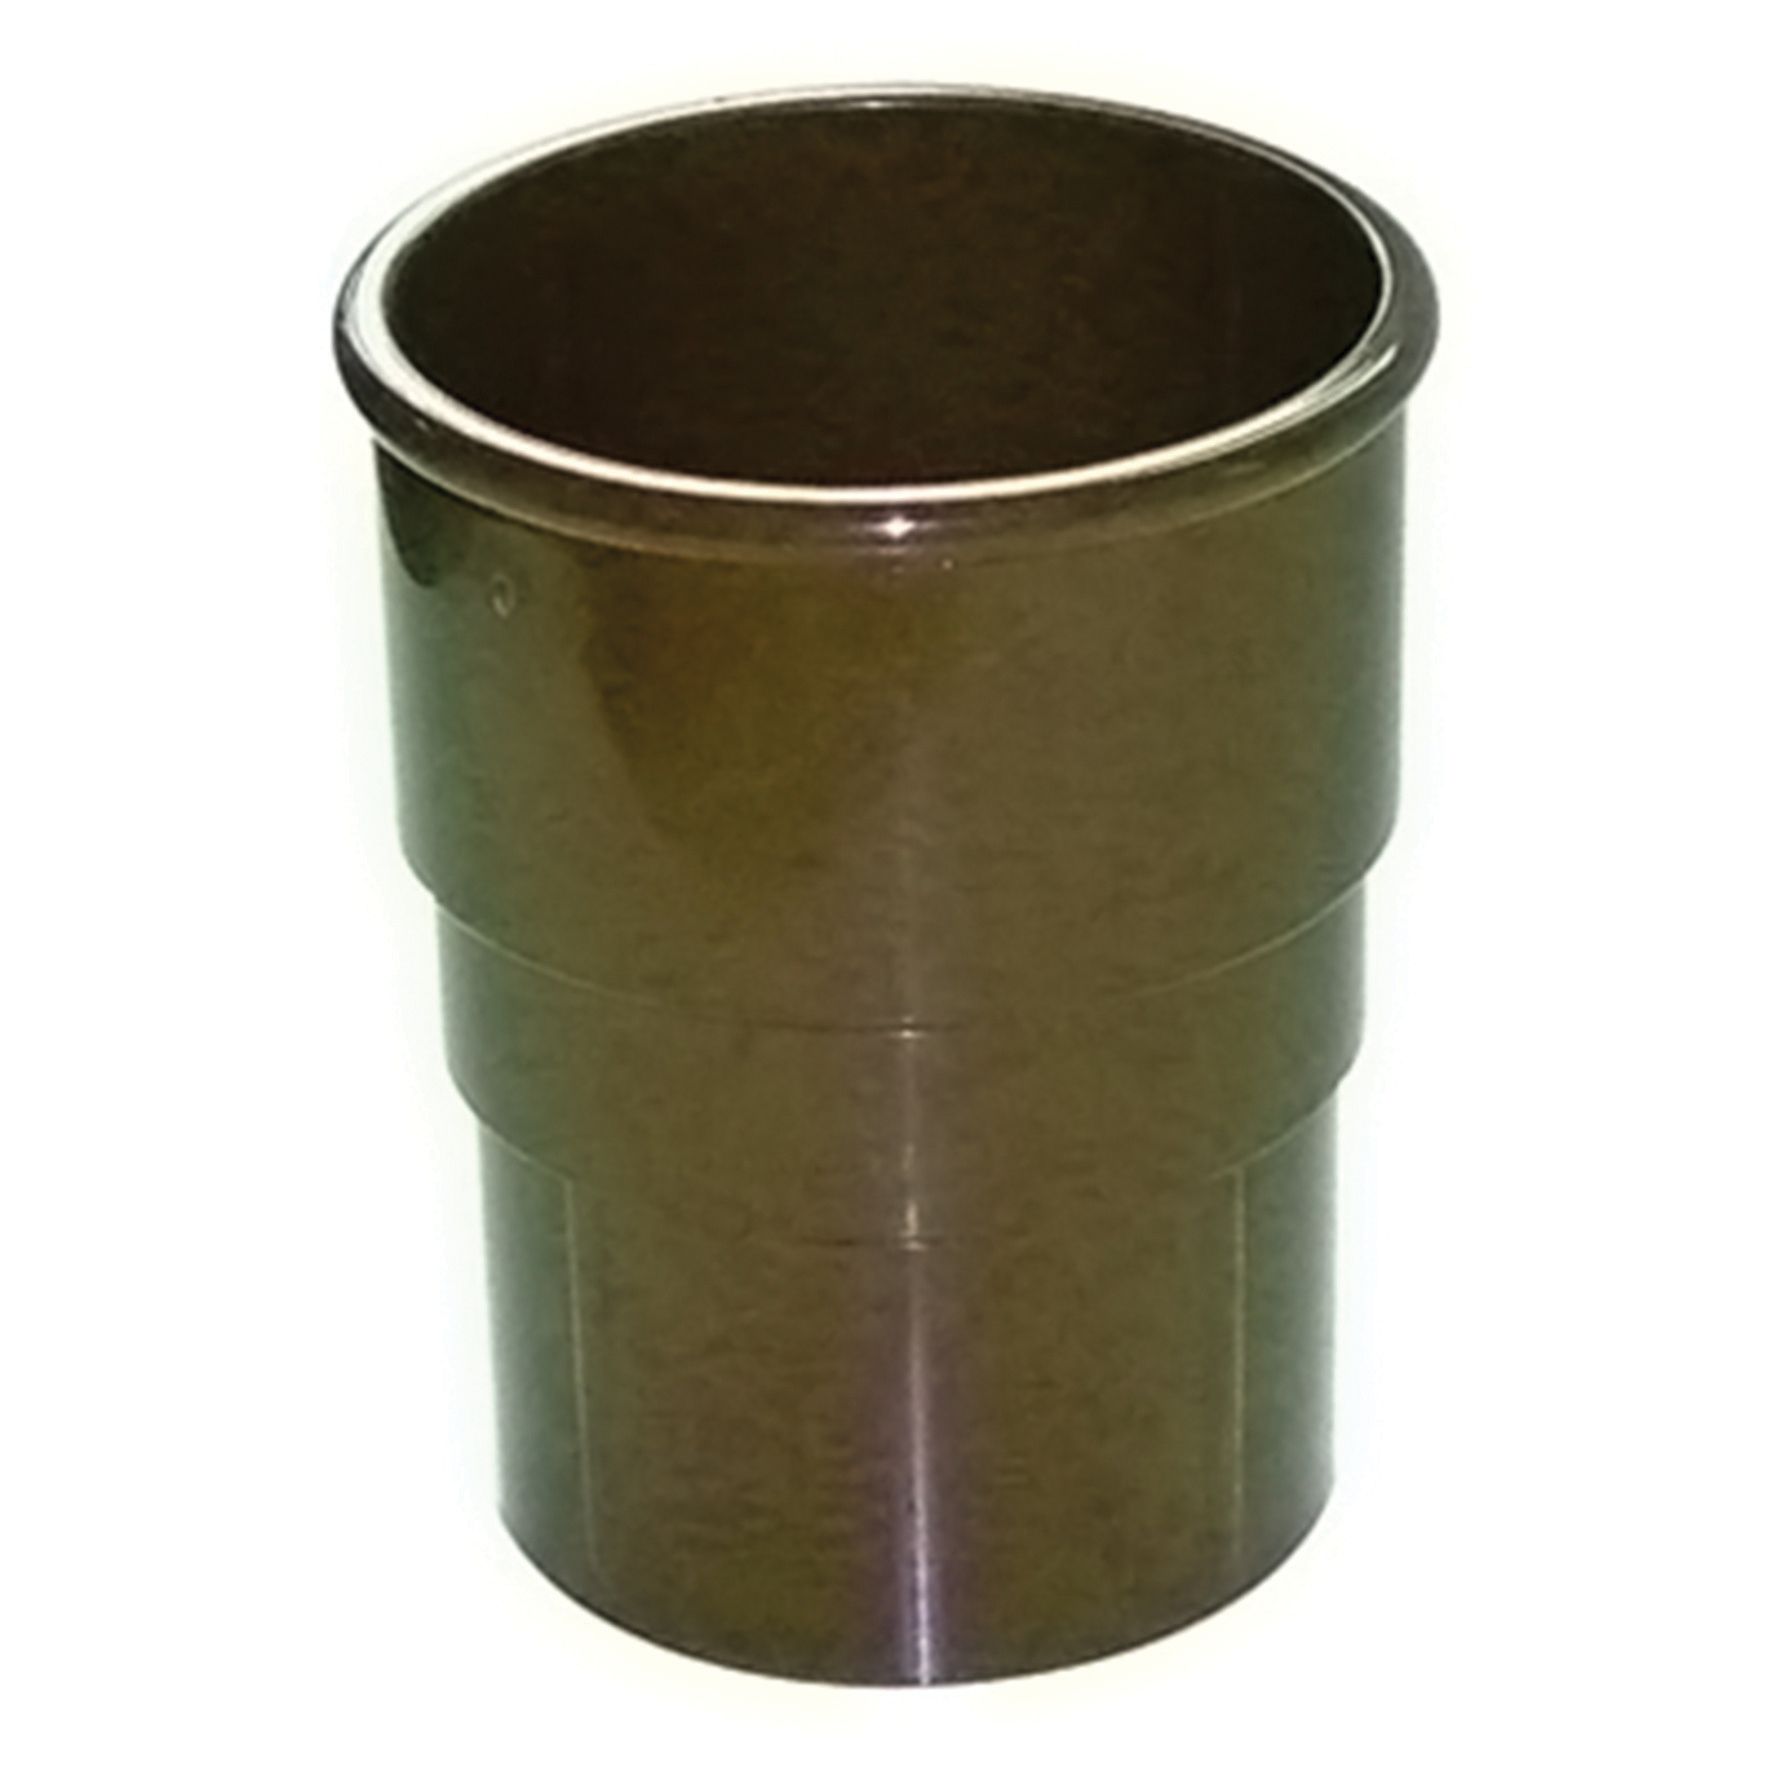 Image of FloPlast 50mm MiniFlo Downpipe Pipe Socket - Brown